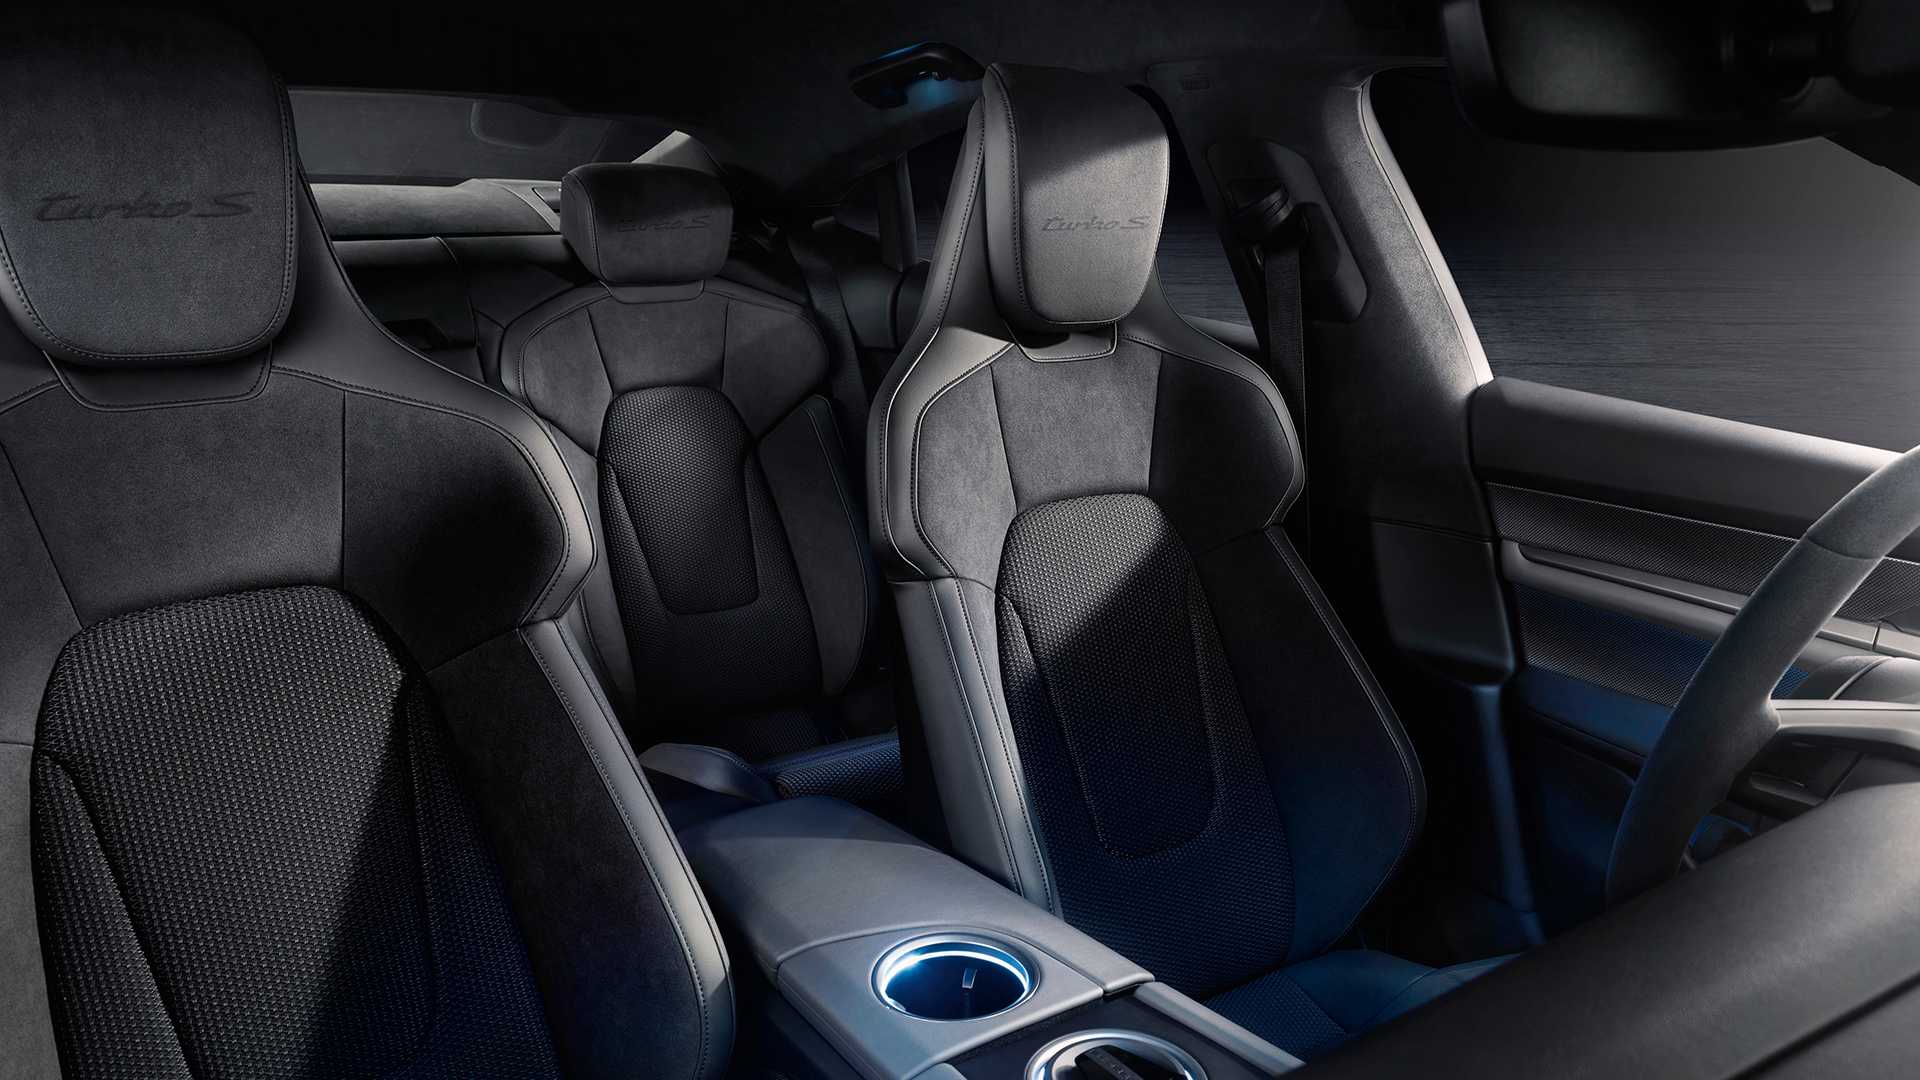 Porsche Taycan interior - Seats